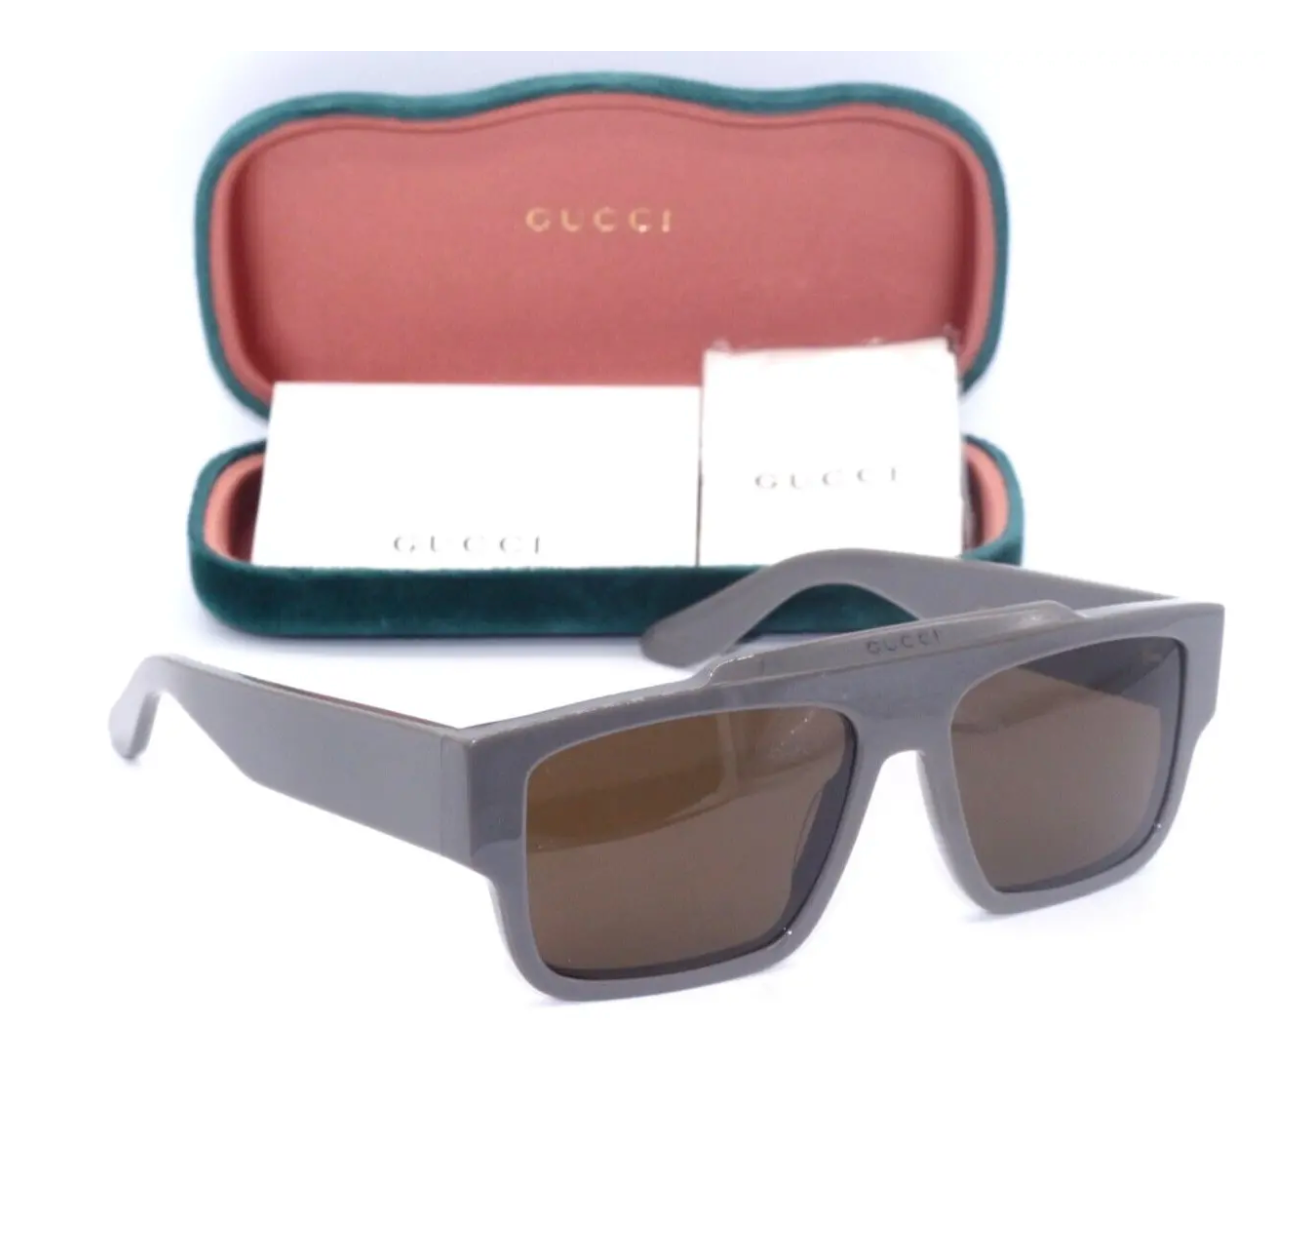 Gucci GG1460S-003 56mm New Sunglasses